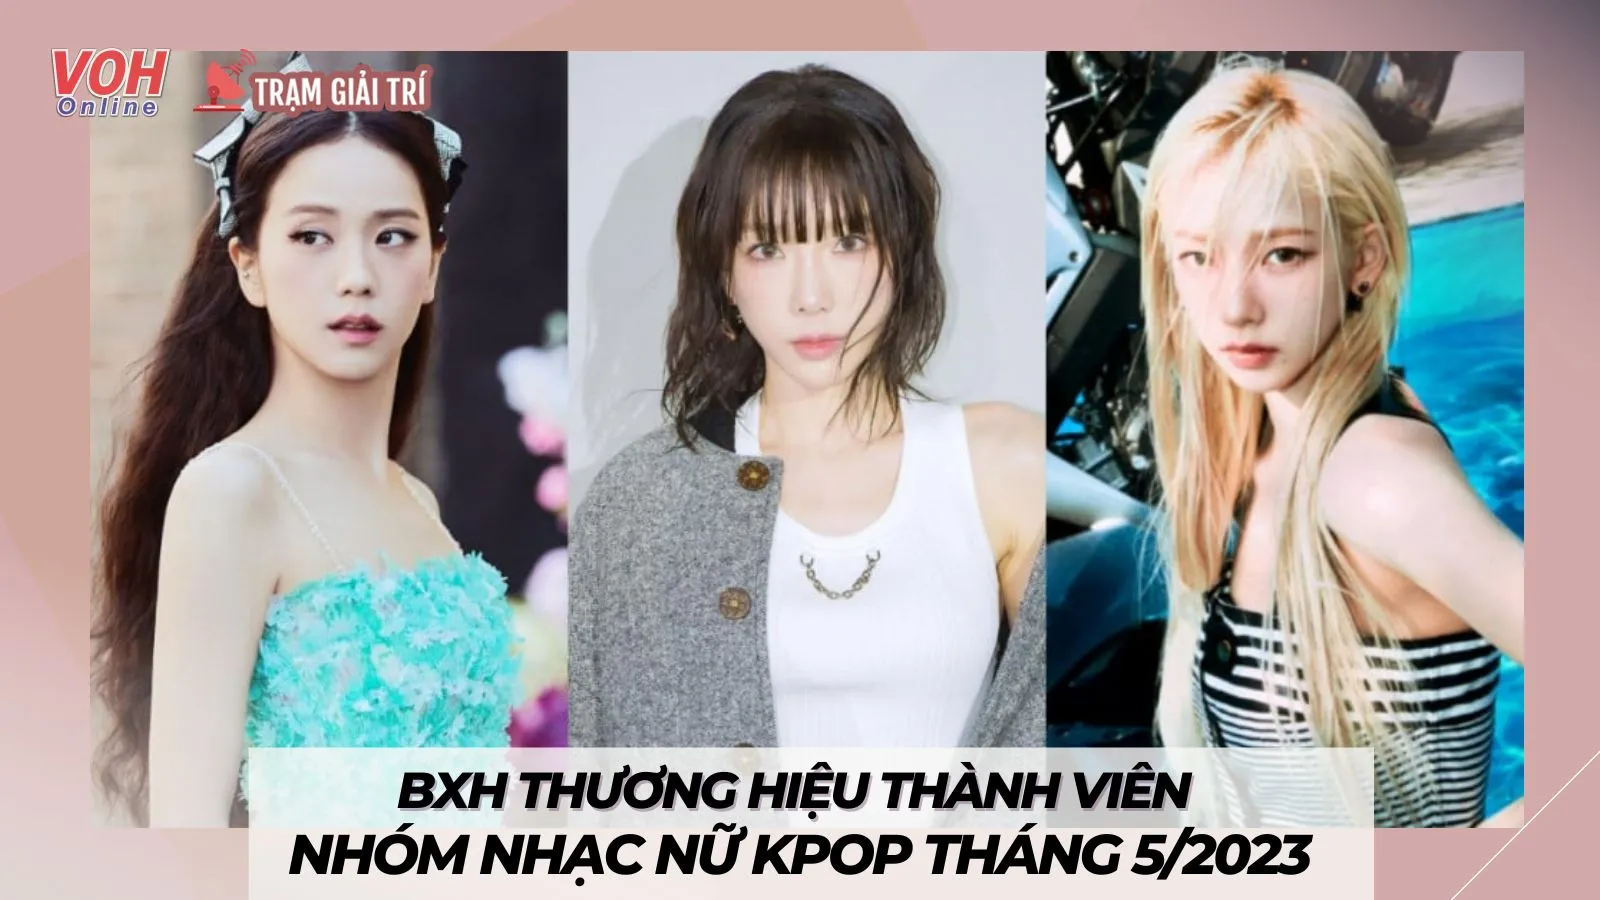 BXH thương hiệu thành viên nhóm nhạc nữ Kpop tháng 5/2023: Jisoo tiếp tục đứng đầu